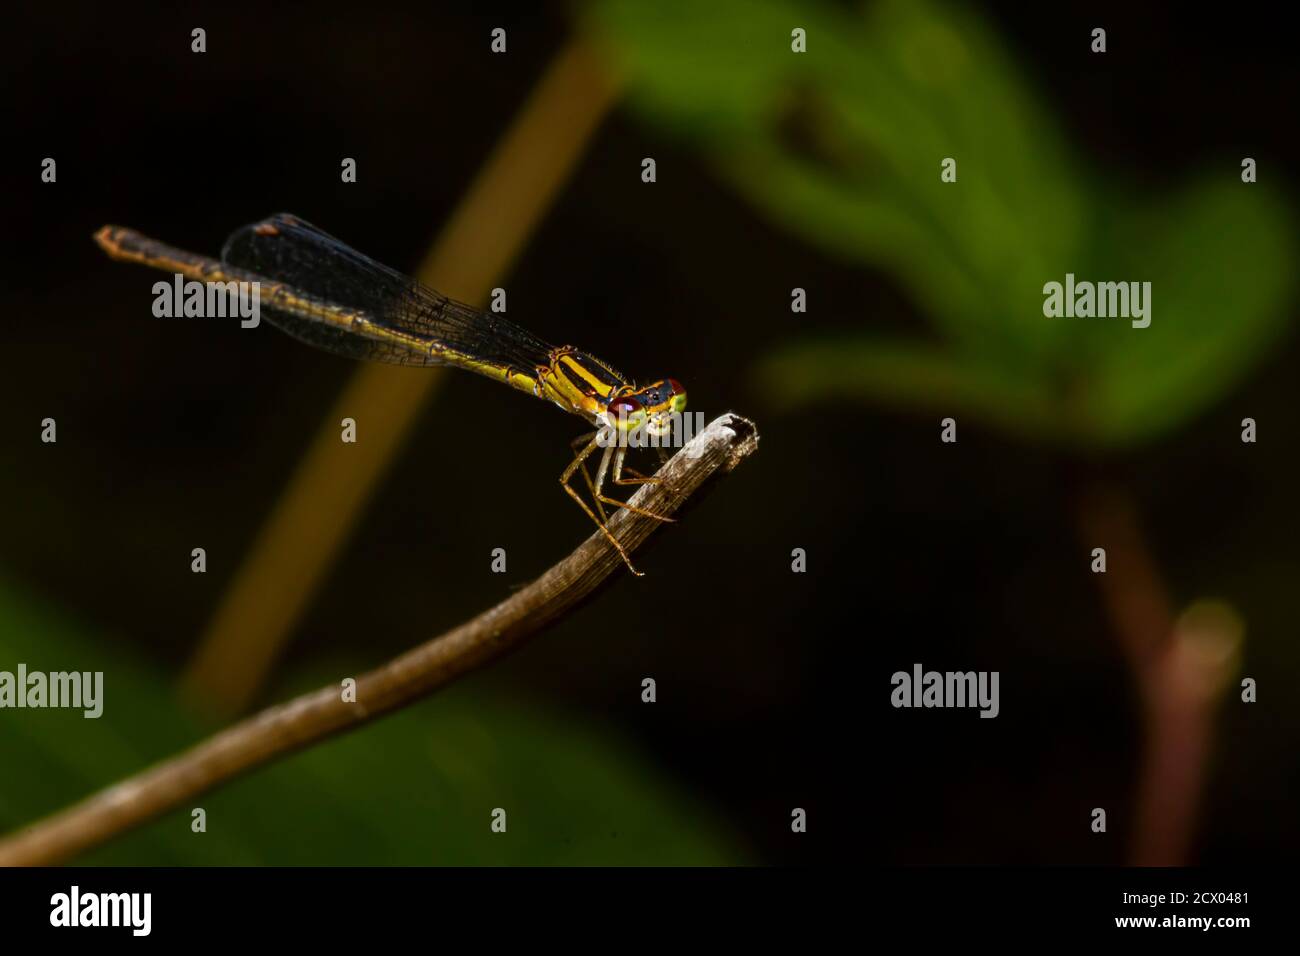 Primo piano immagine macro isolata di una posita di Ischnura (fragile forktail) una mosca che misura circa 25 mm ed è originaria degli Stati Uniti orientali. Questo giallo Foto Stock